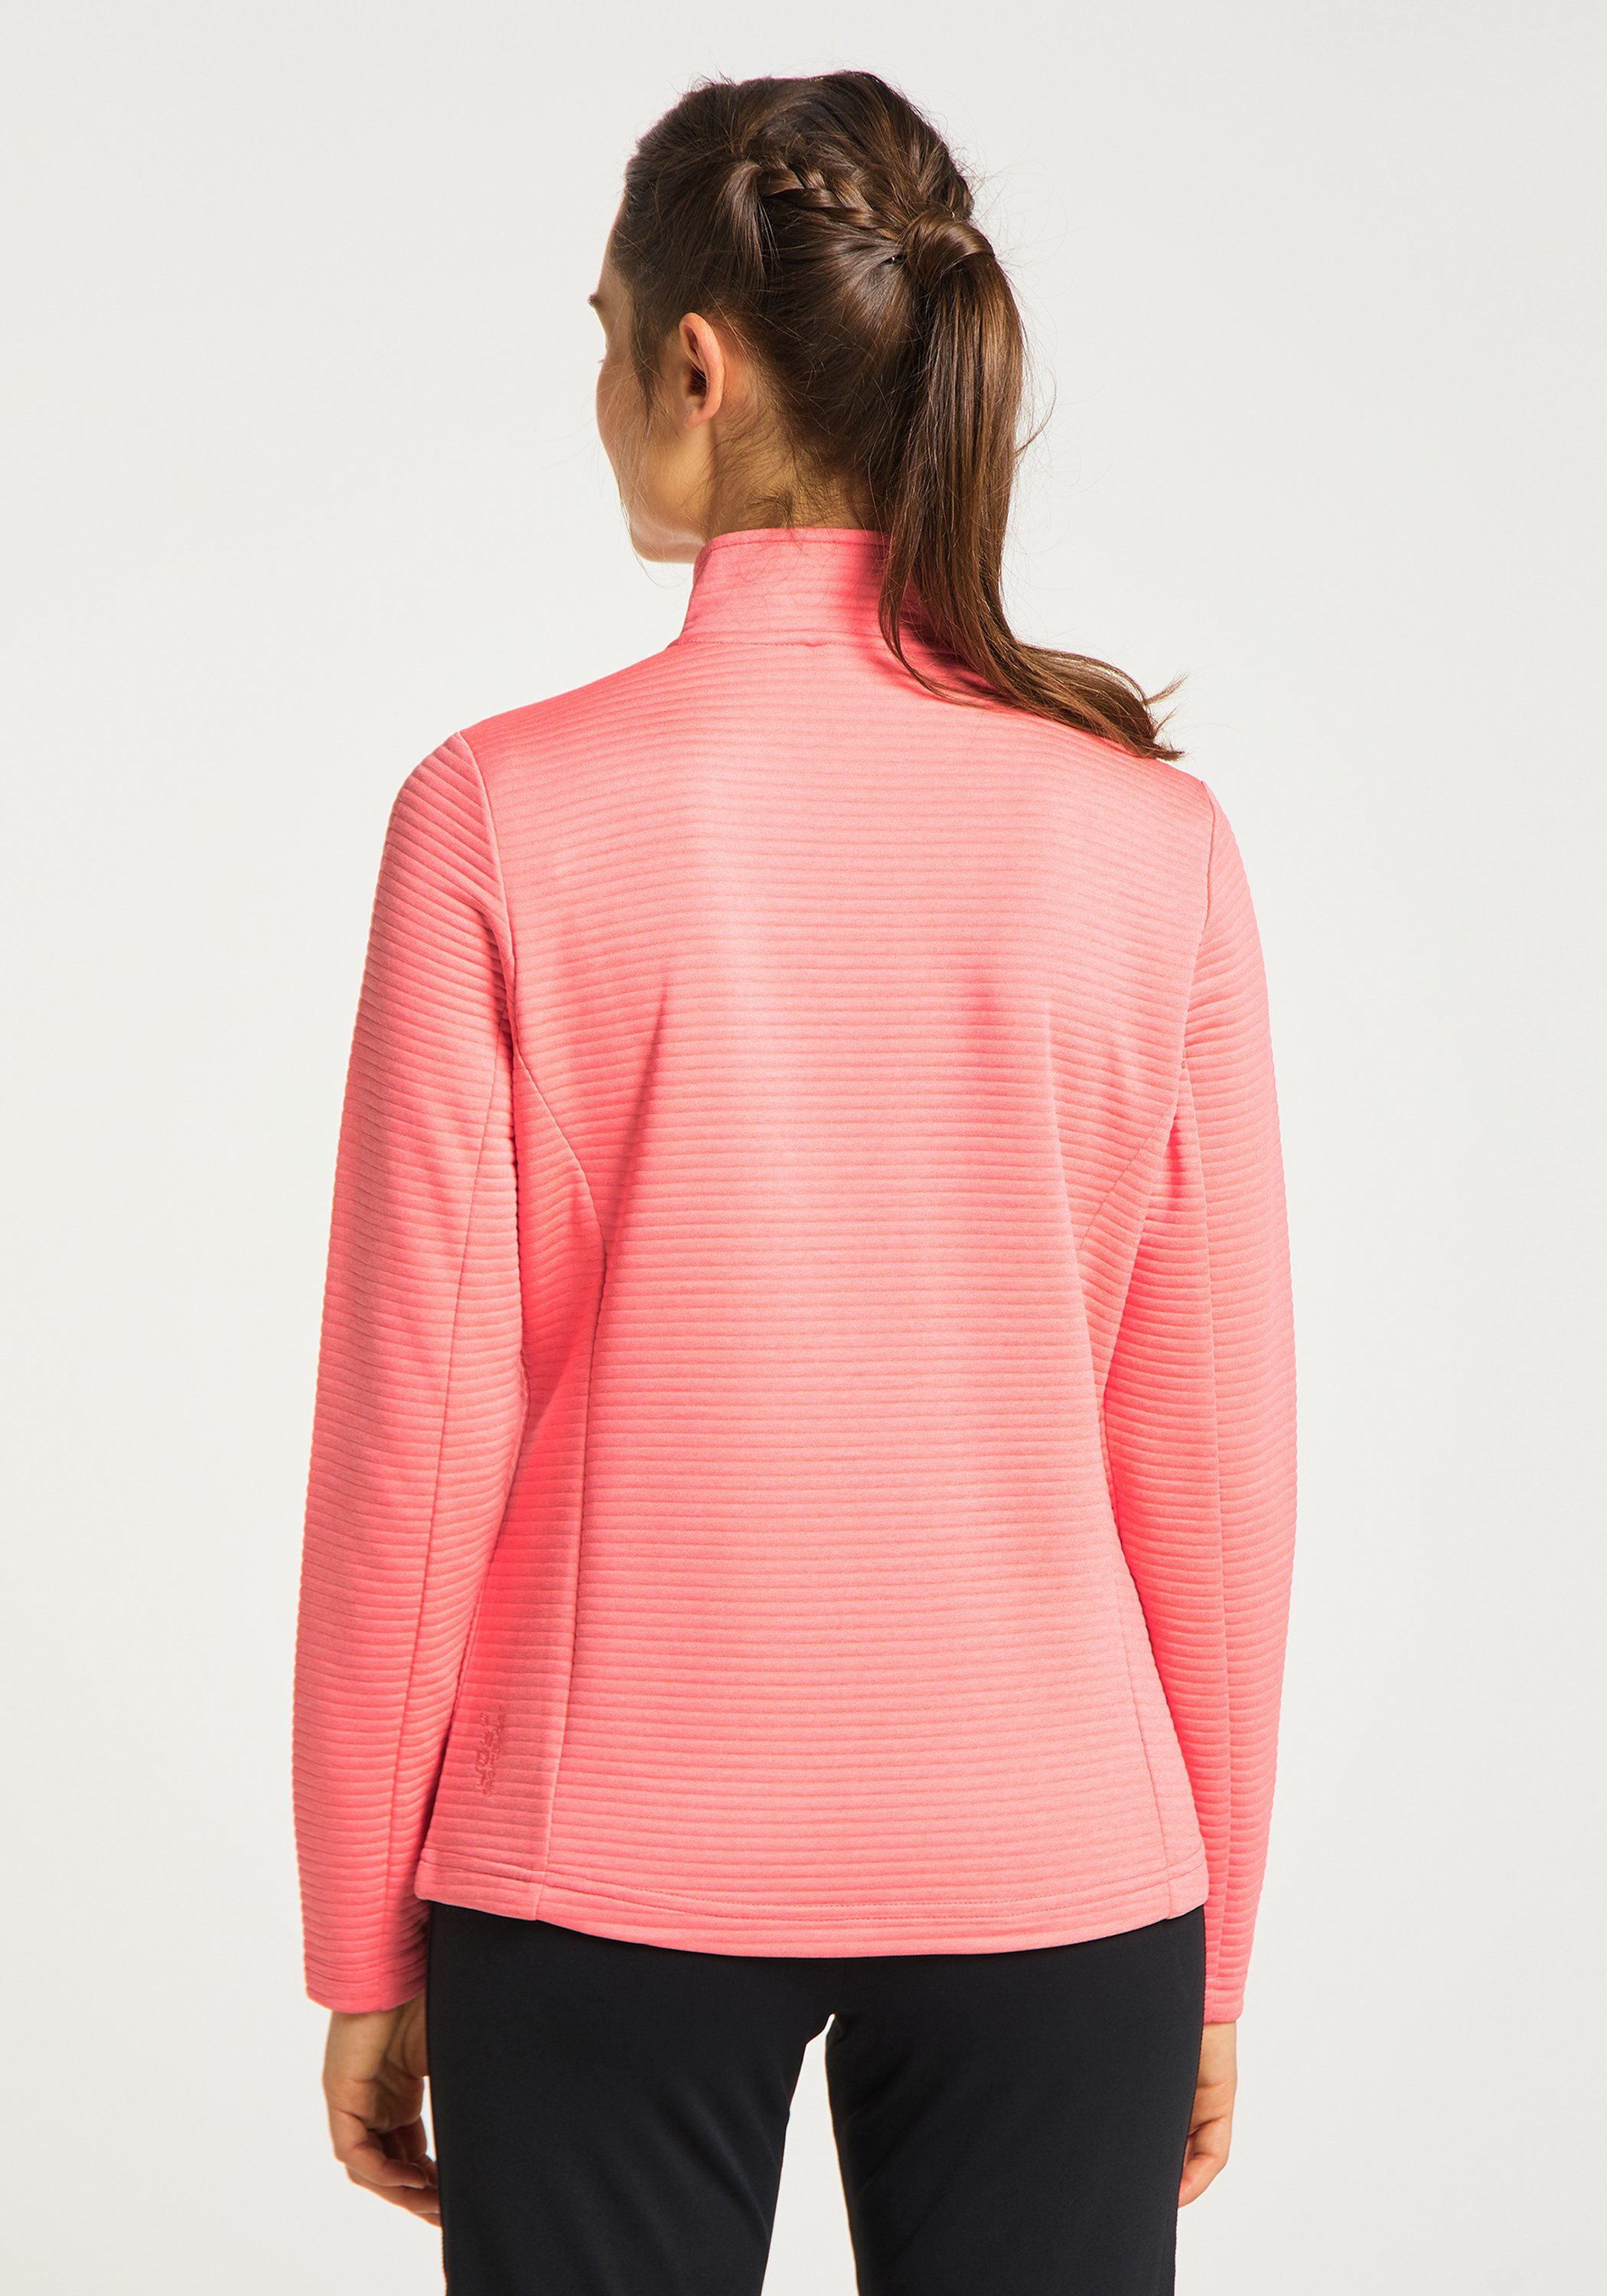 Jacke coral pink melange Joy Sportswear Trainingsjacke PEGGY